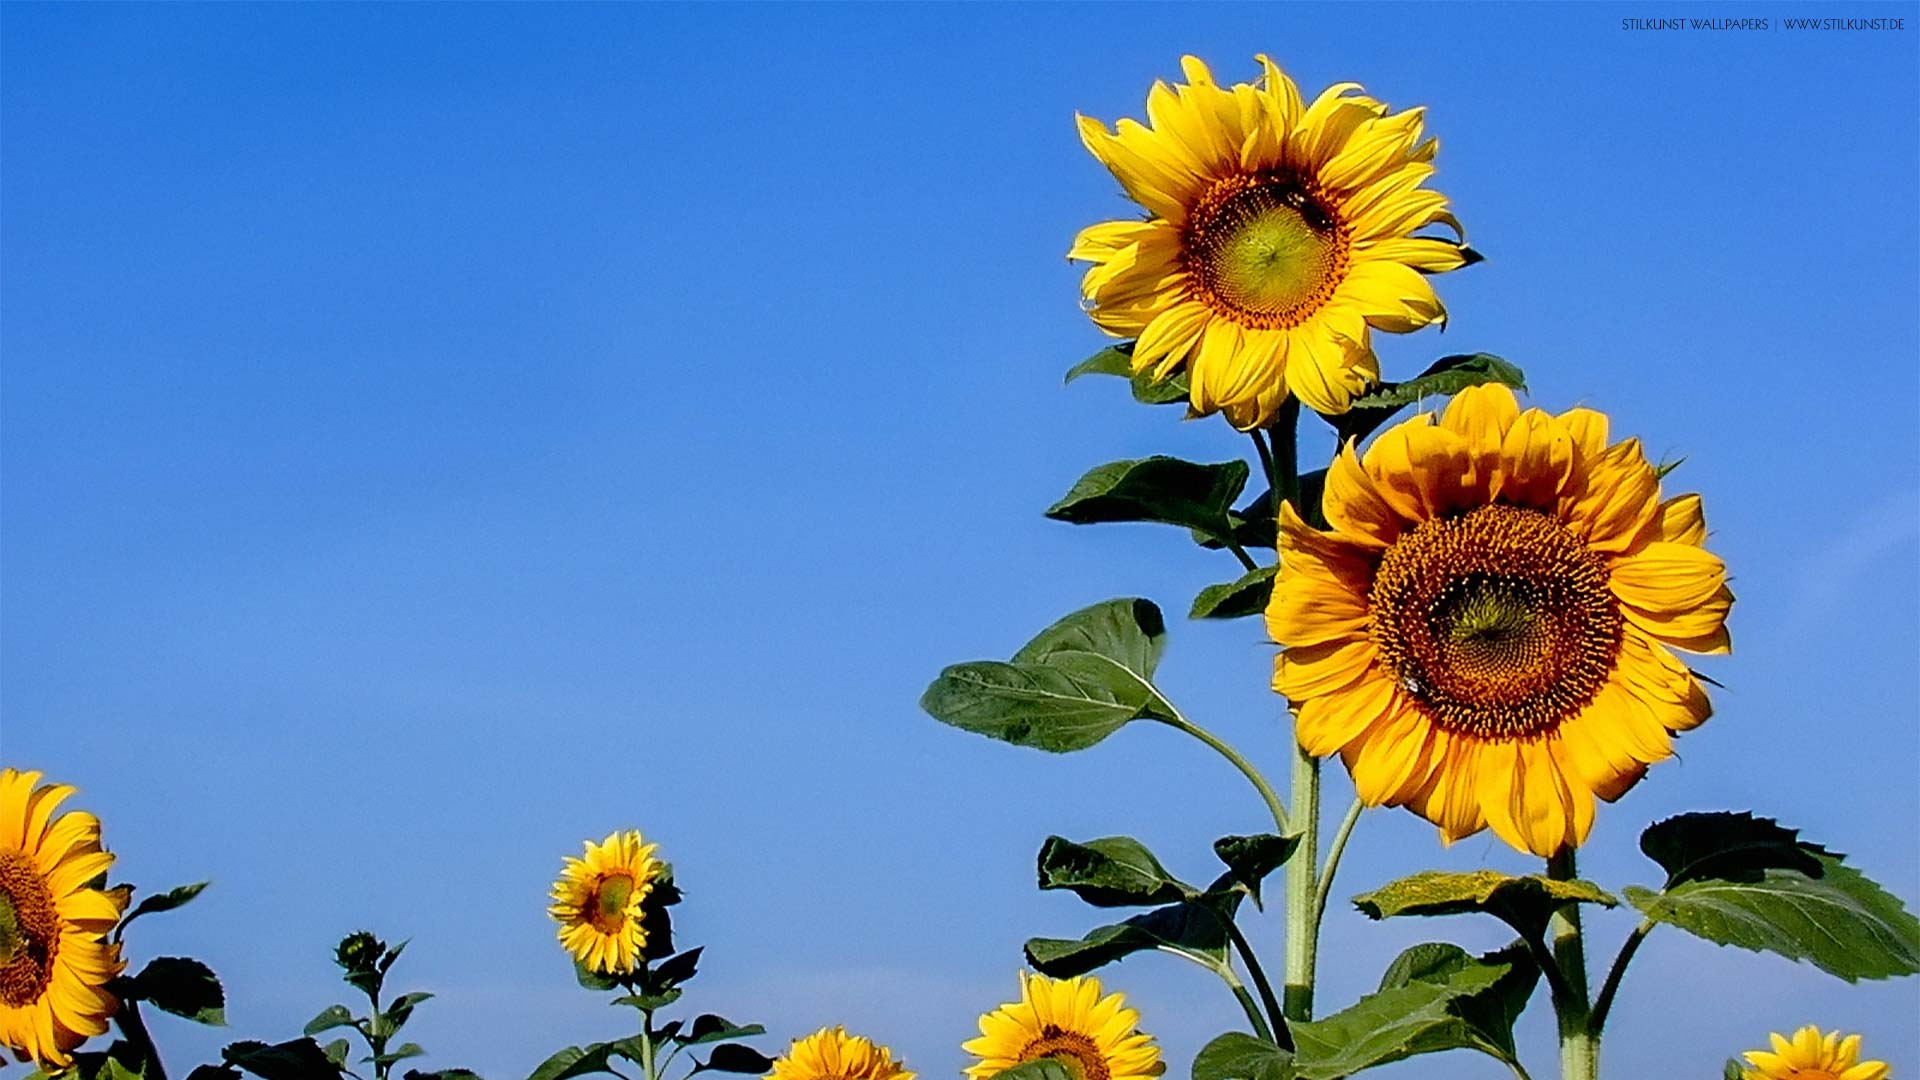 Sonnenblumen auf dem Feld | 1920 x 1080px | Bild: ©by Sabrina | Reiner | www.stilkunst.de | Lizenz: CC BY-SA